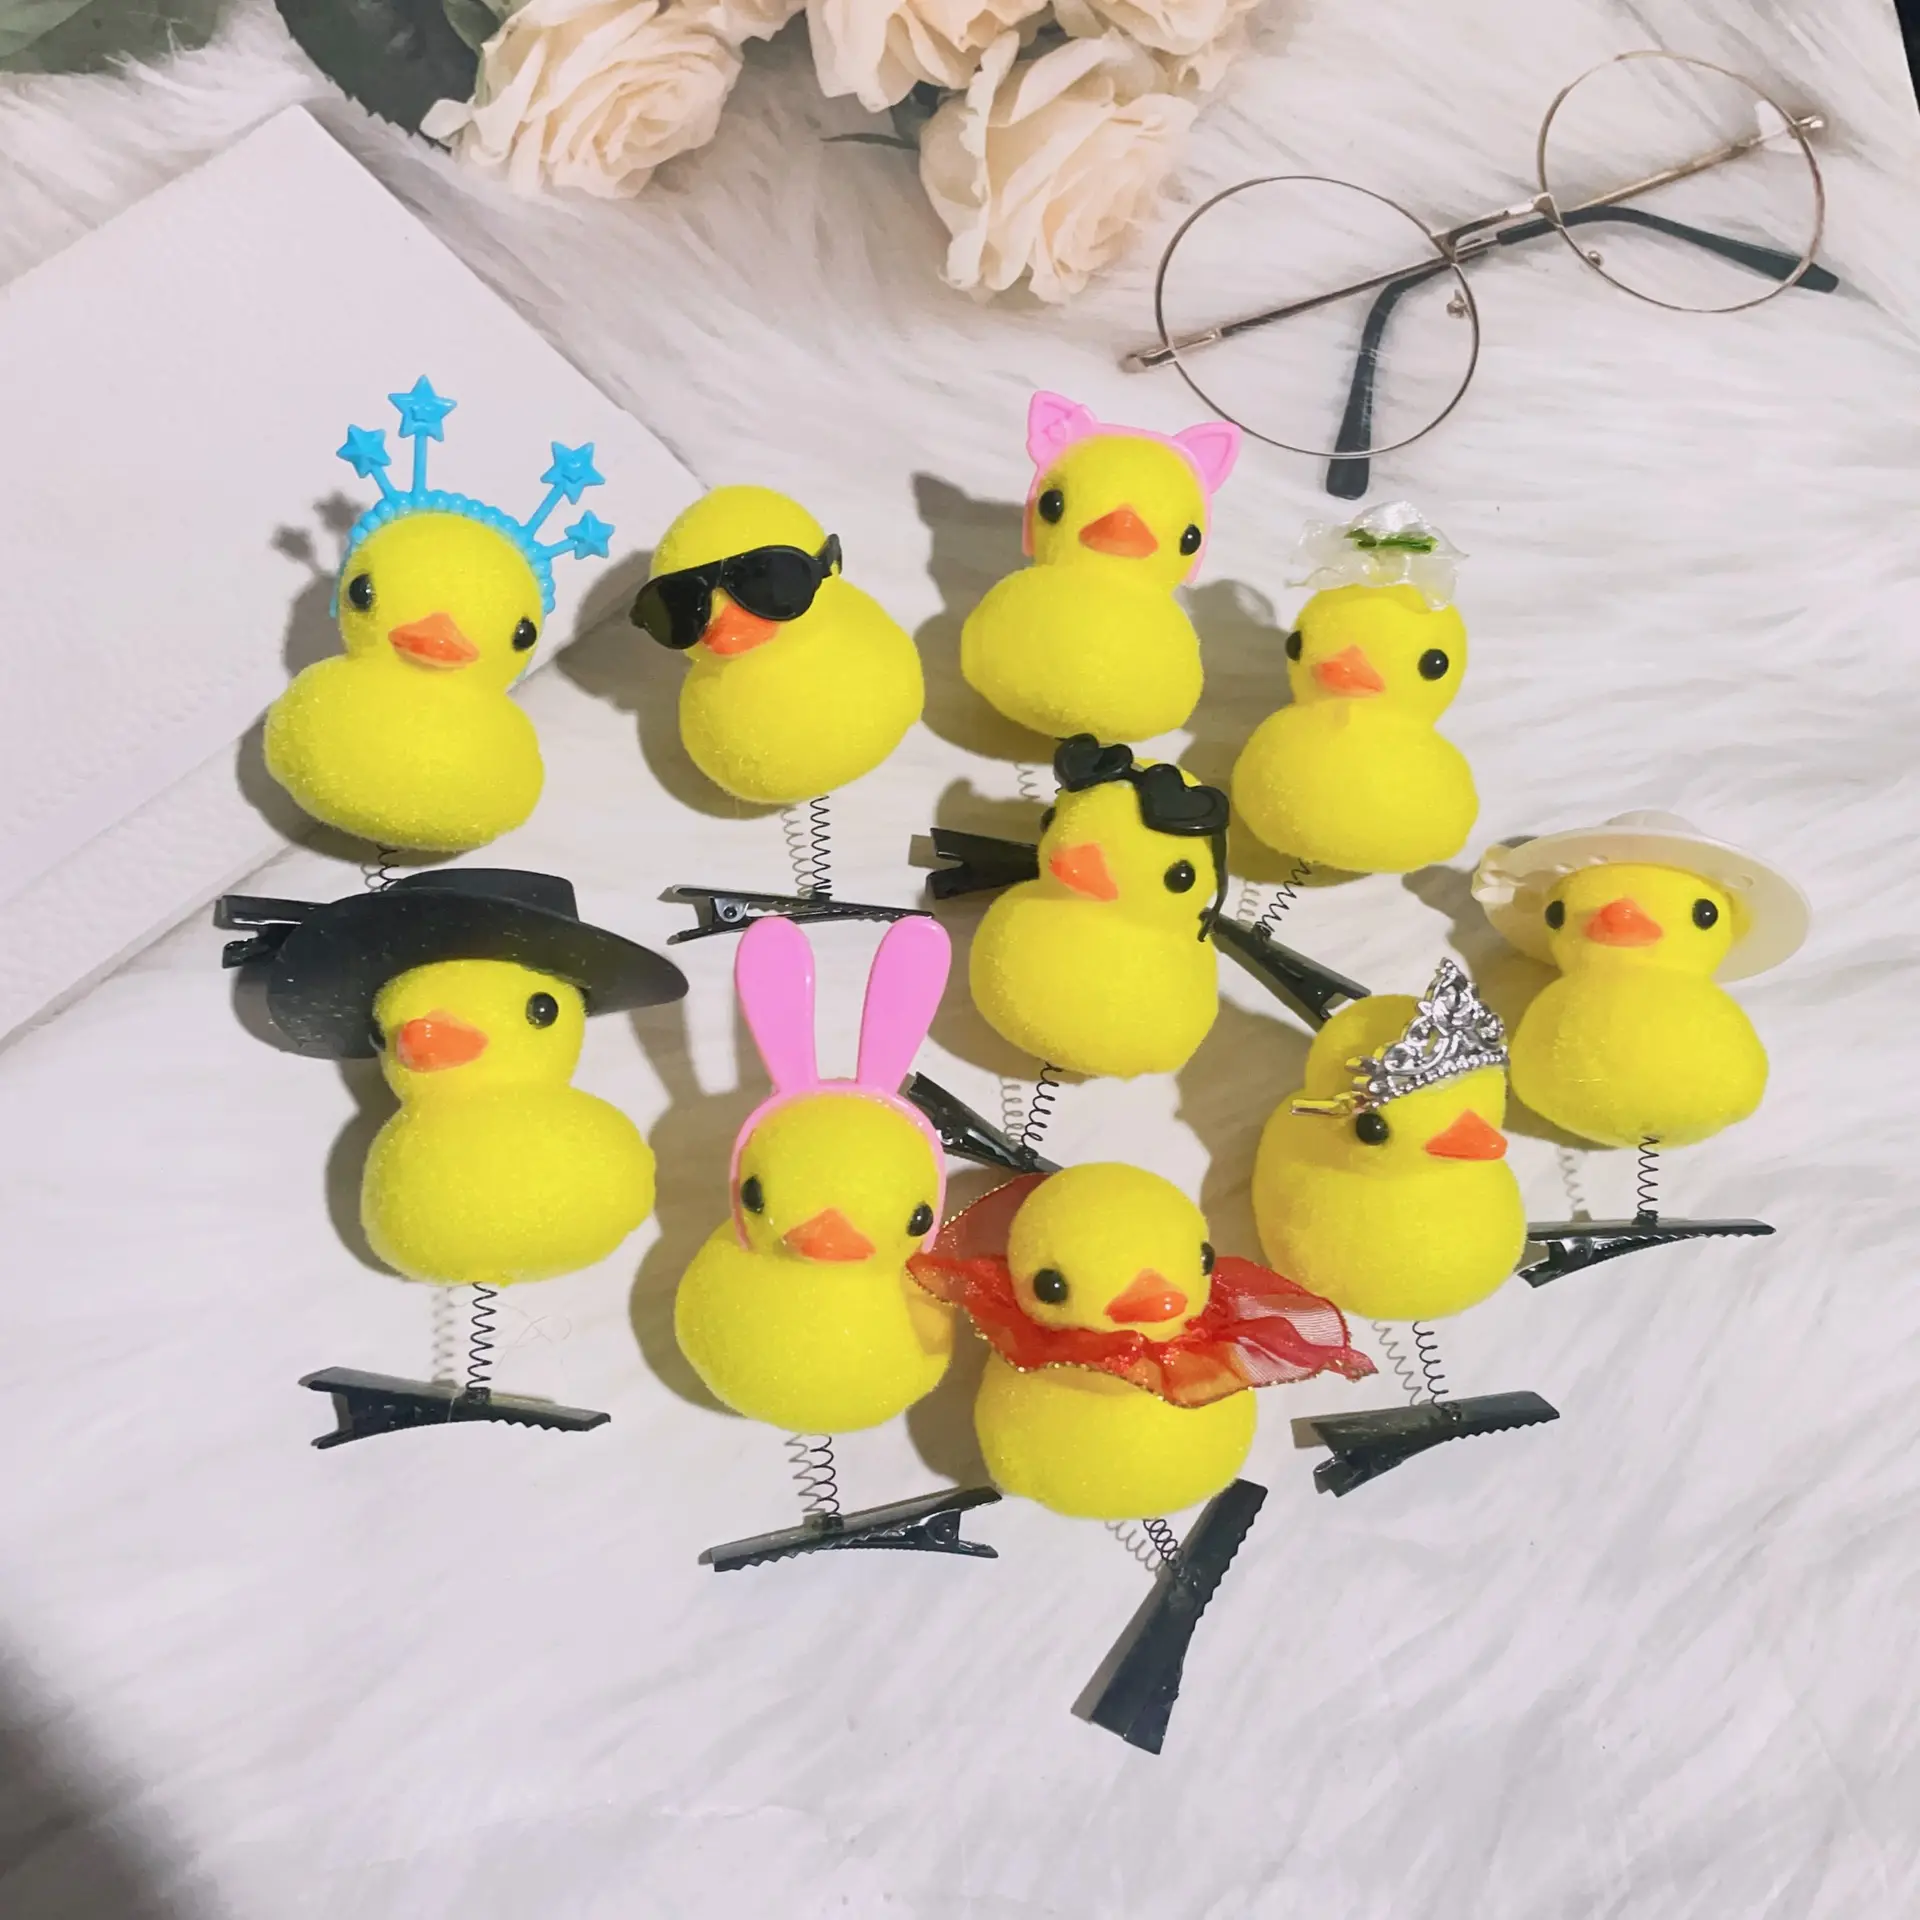 Schöne lustige Haarschmuck Kawaii Brille Ente Haars pange Kinder Mädchen Plüsch kleine gelbe Ente mit Brille Frühling Haarnadel